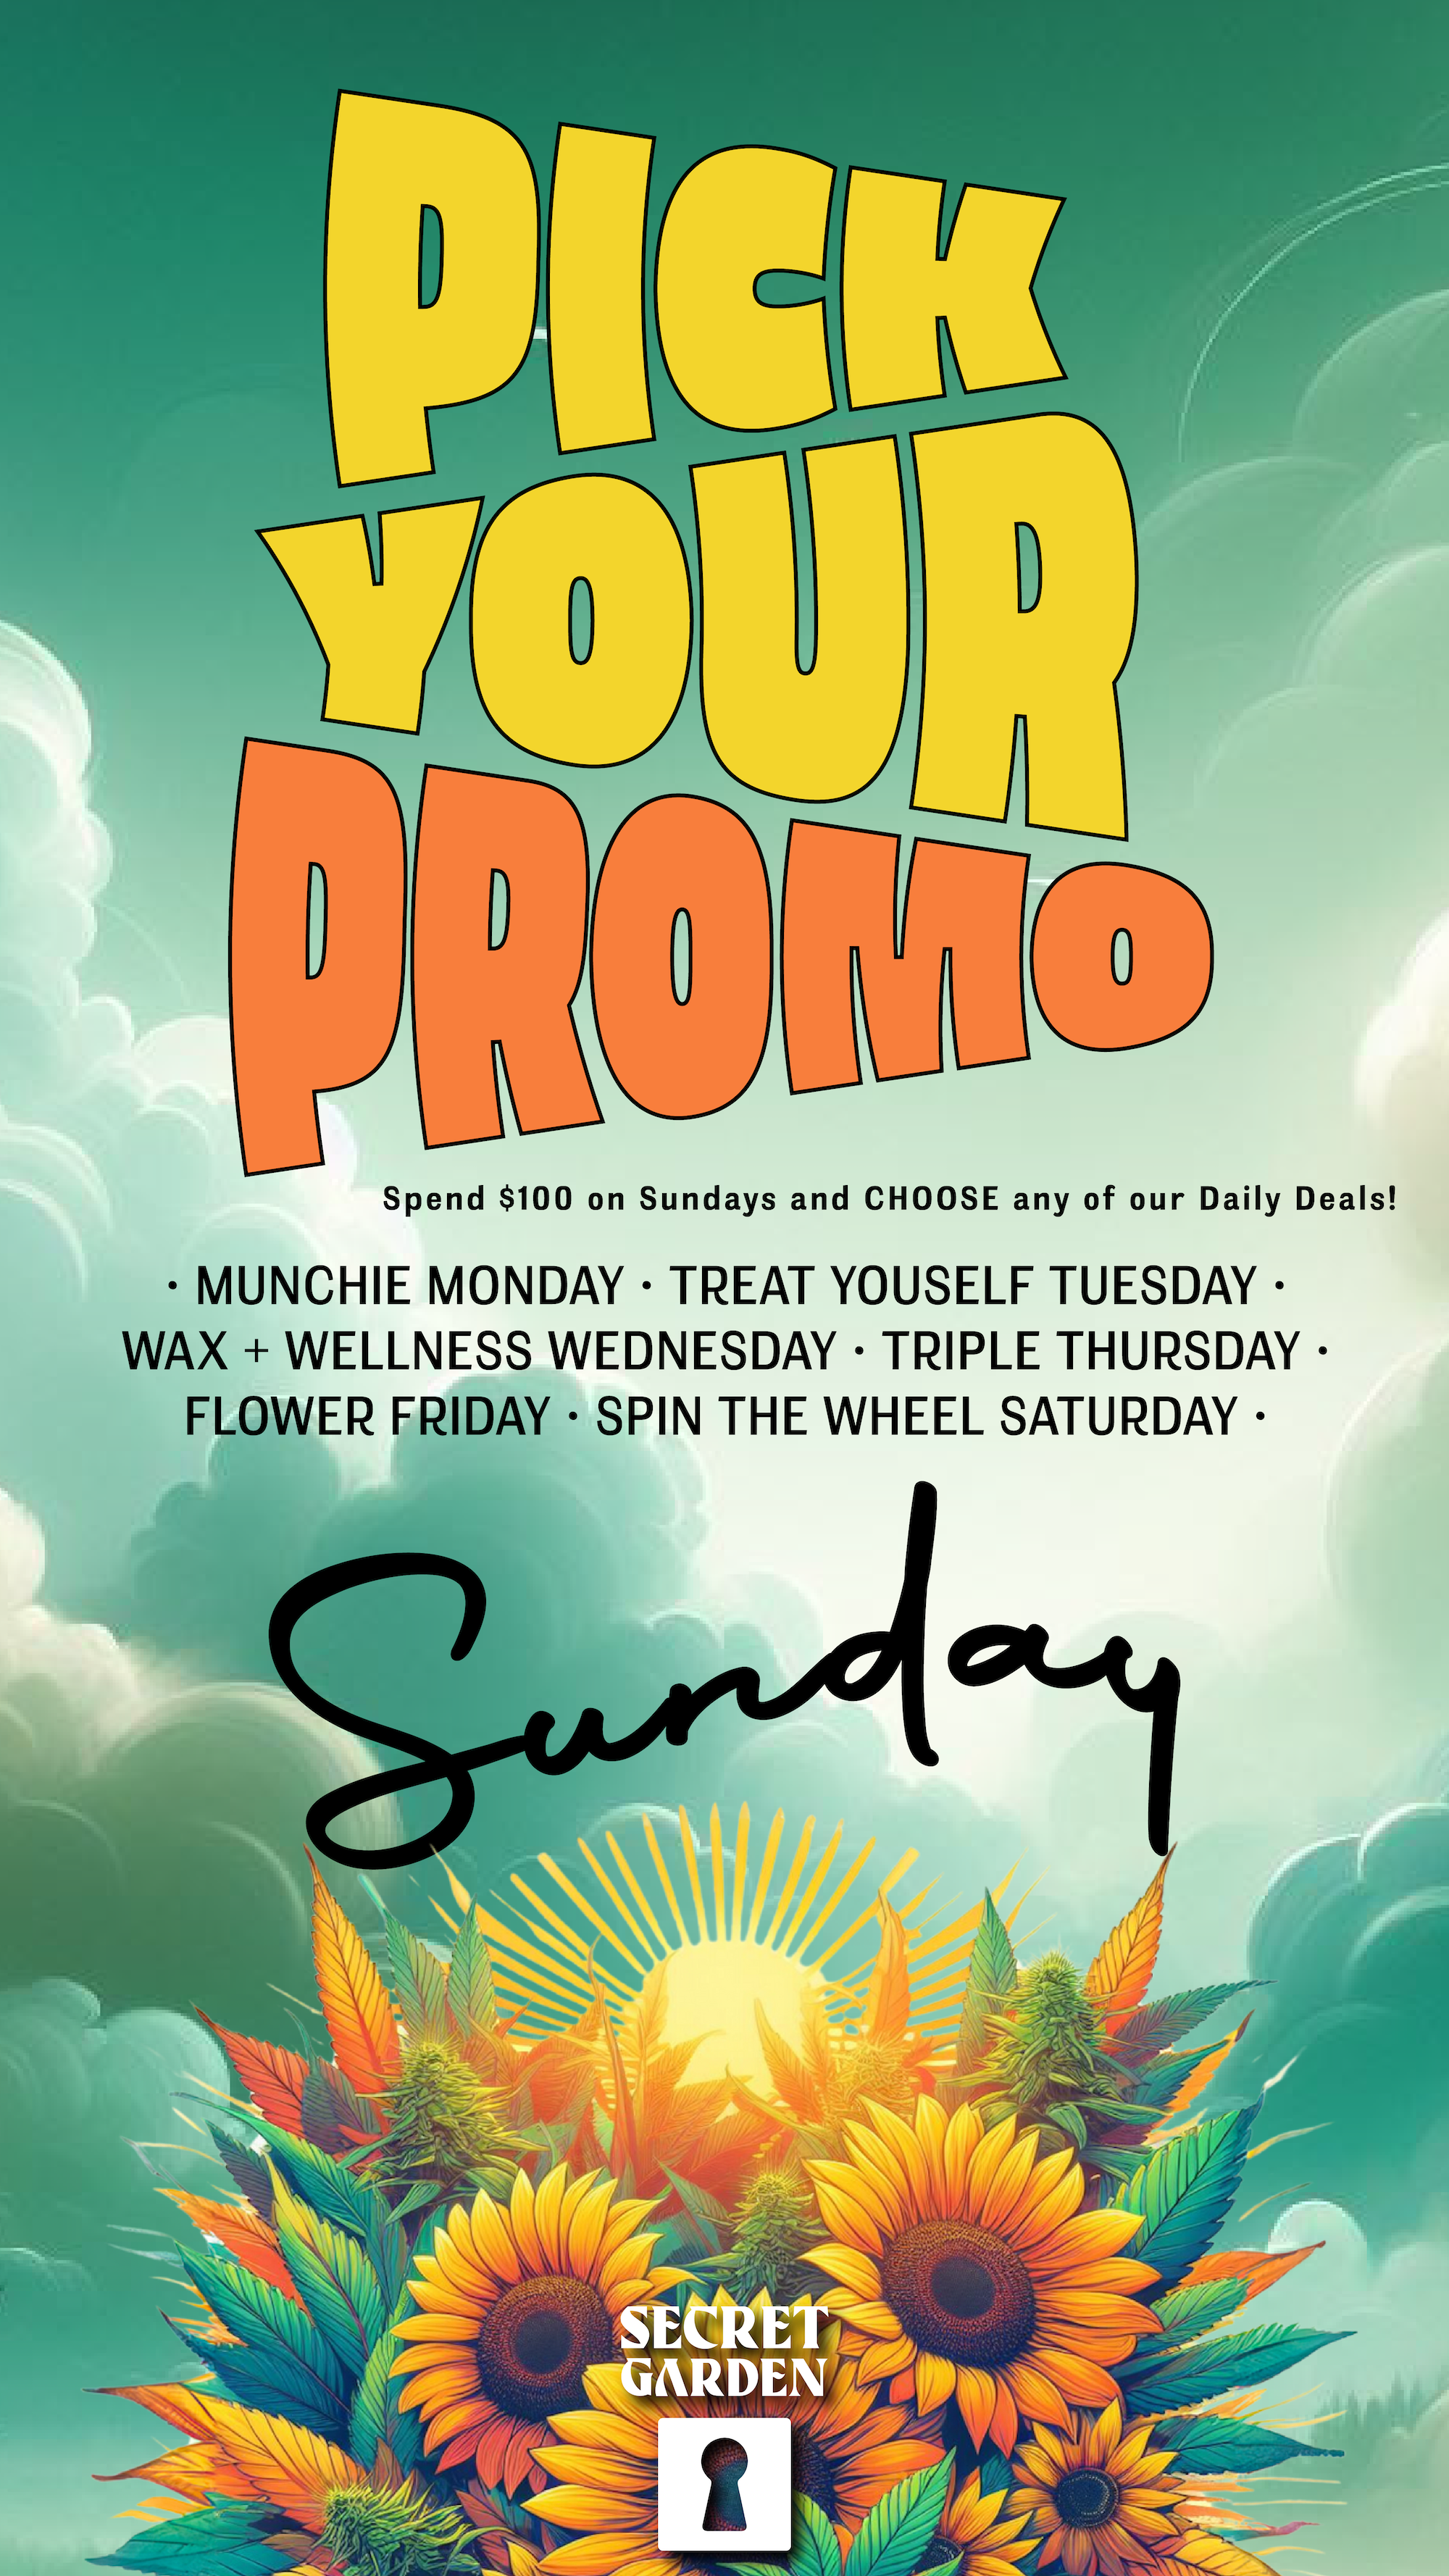 A flyer describing the PICK YOUR PROMO SUNDAY cannabis daily deal at Secret Garden Costa Mesa